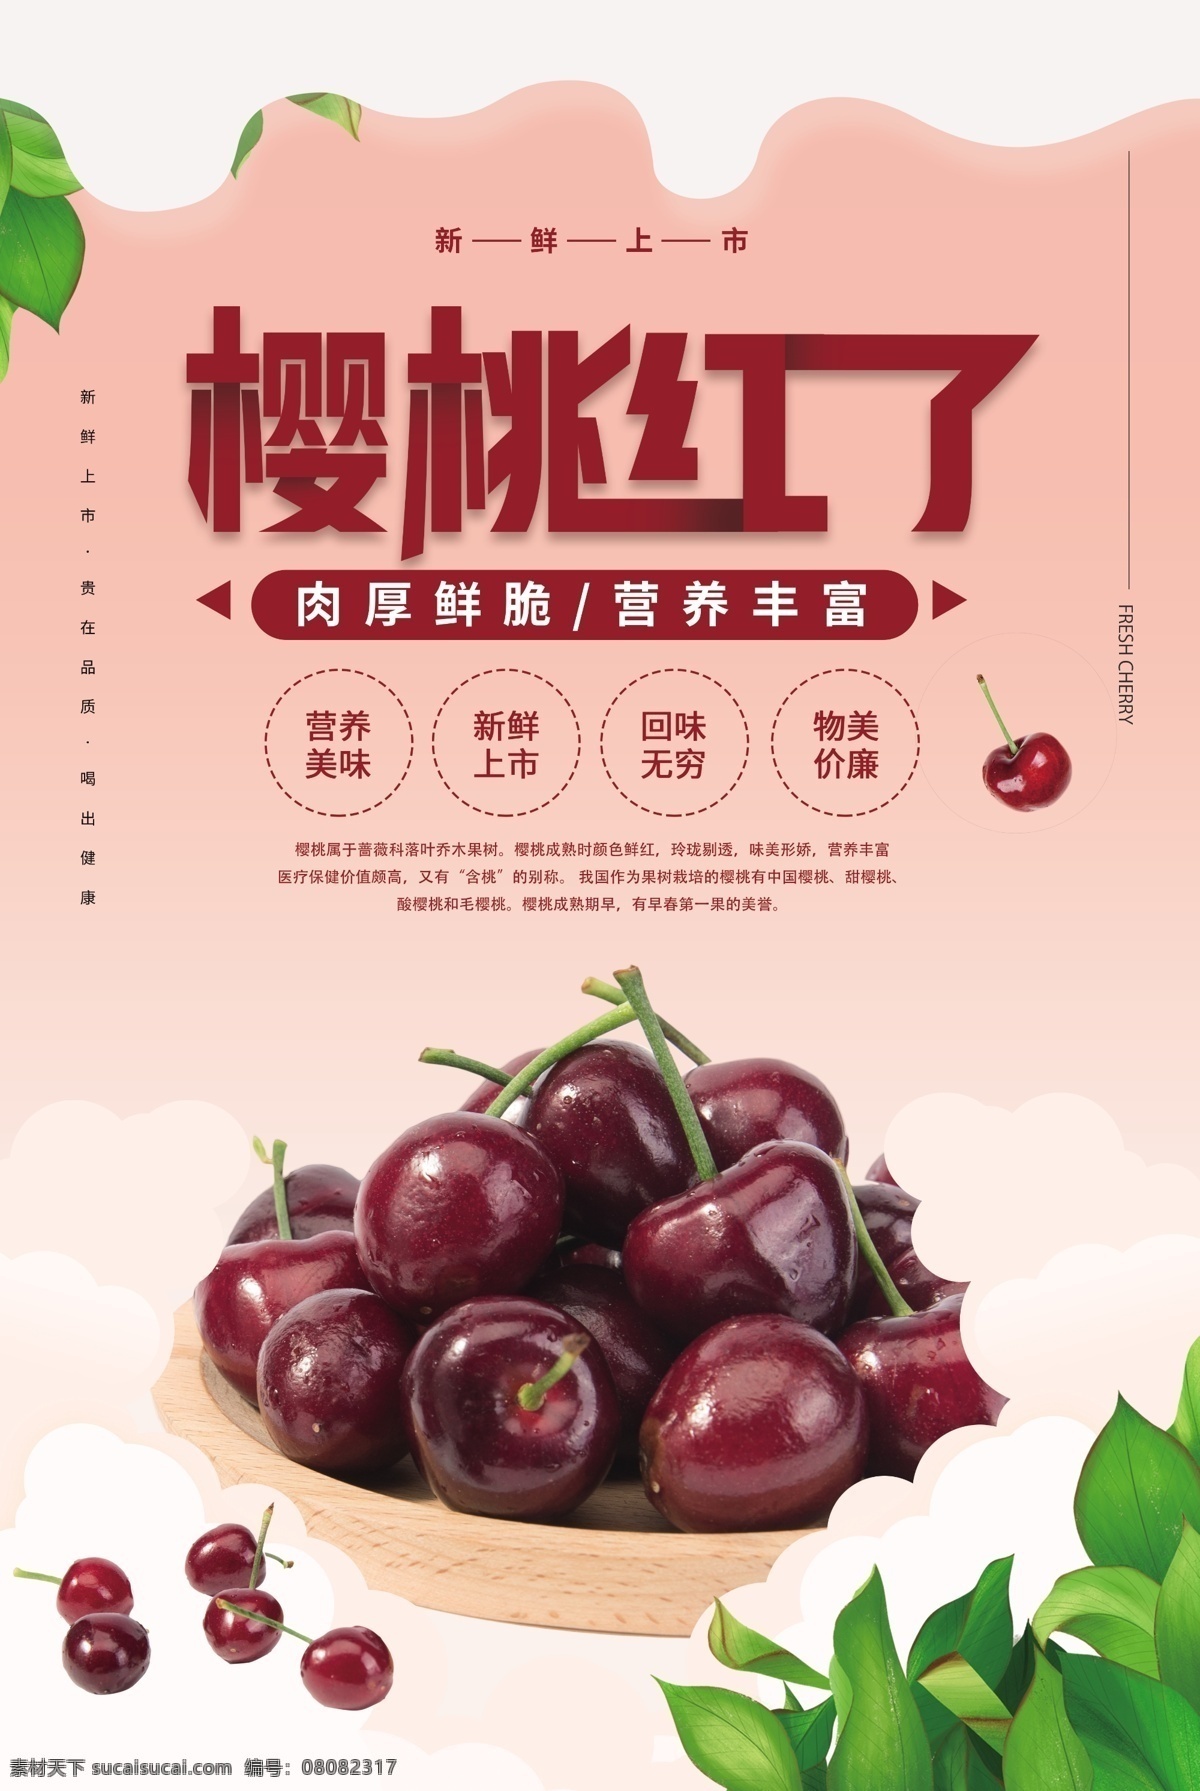 樱桃 水果 果实 活动 宣传海报 素材图片 宣传 海报 餐饮美食 类